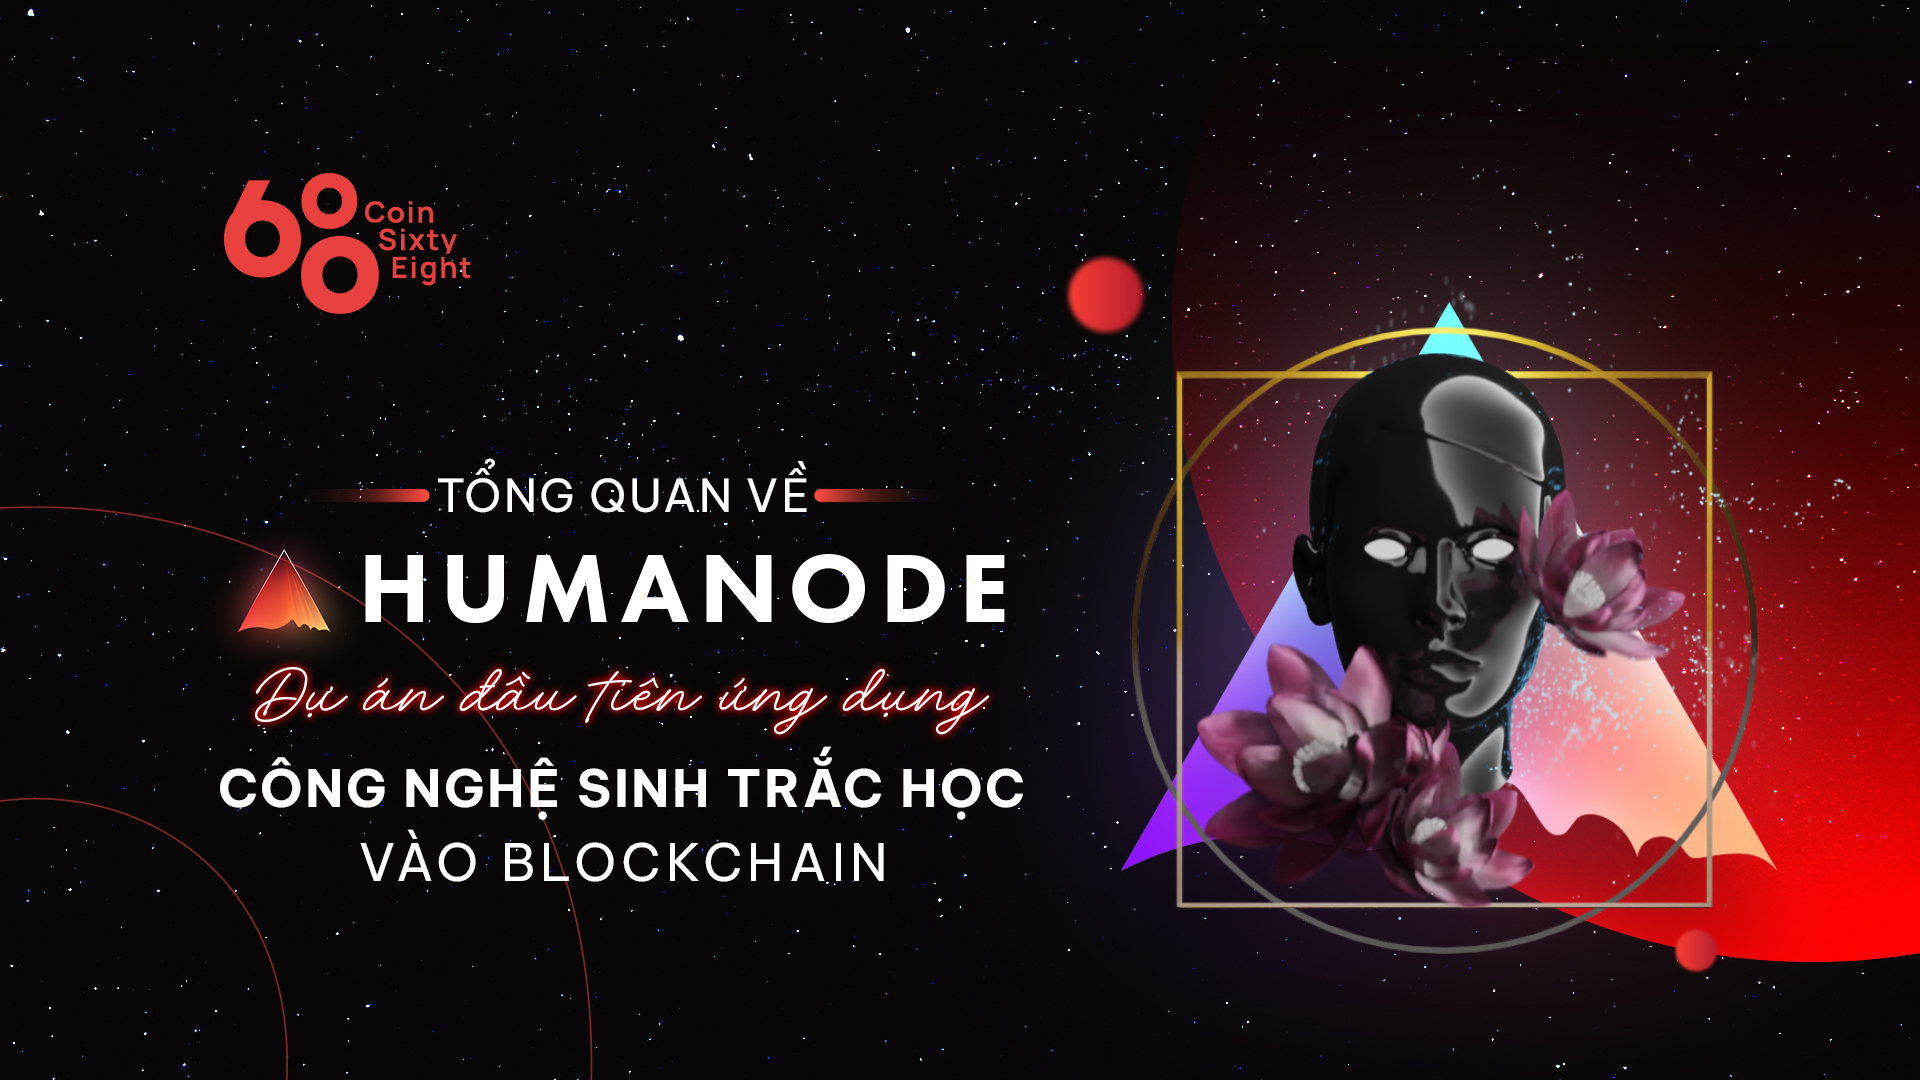 Tổng quan về dự án Humanode